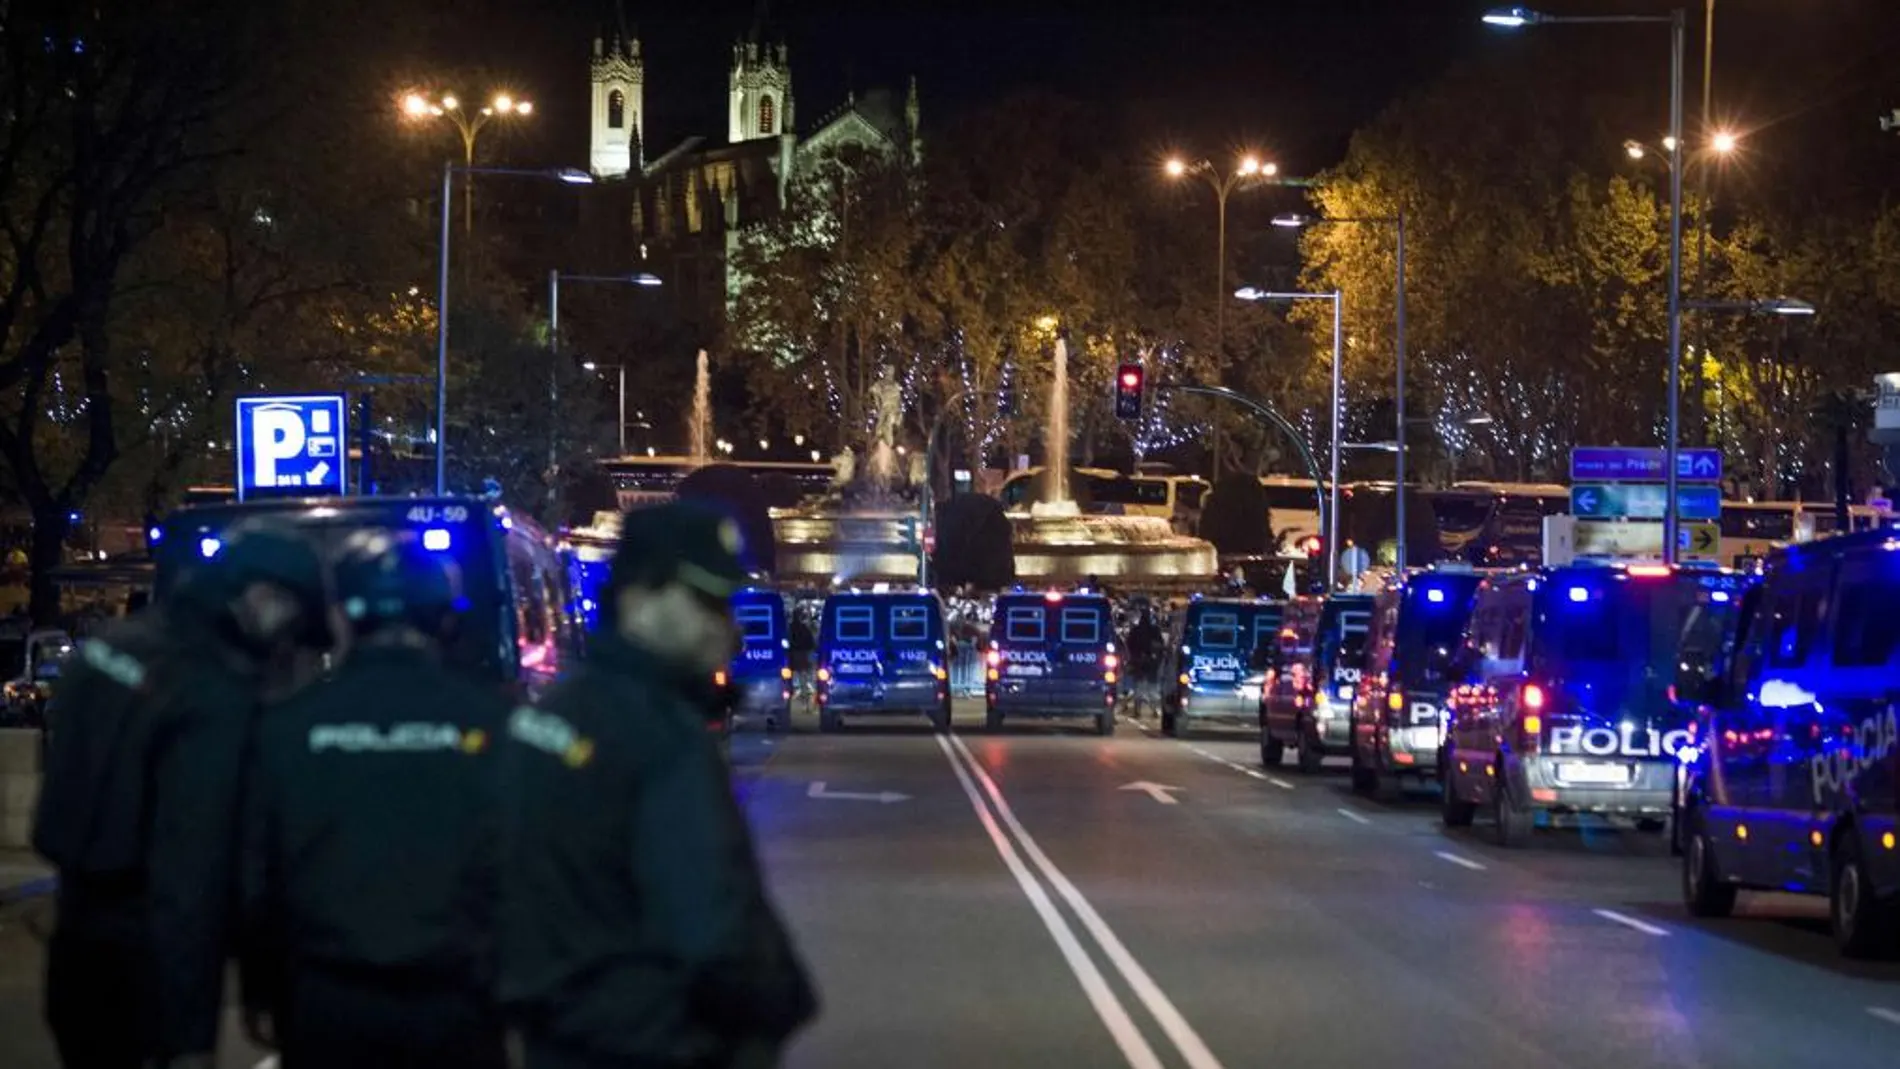 Efectivos de la Policía Nacional en la calle de la plaza de las Cortes de Madrid, en las inmediaciones del Congreso de los Diputados tras la manifestación de "Rodea el Congreso"